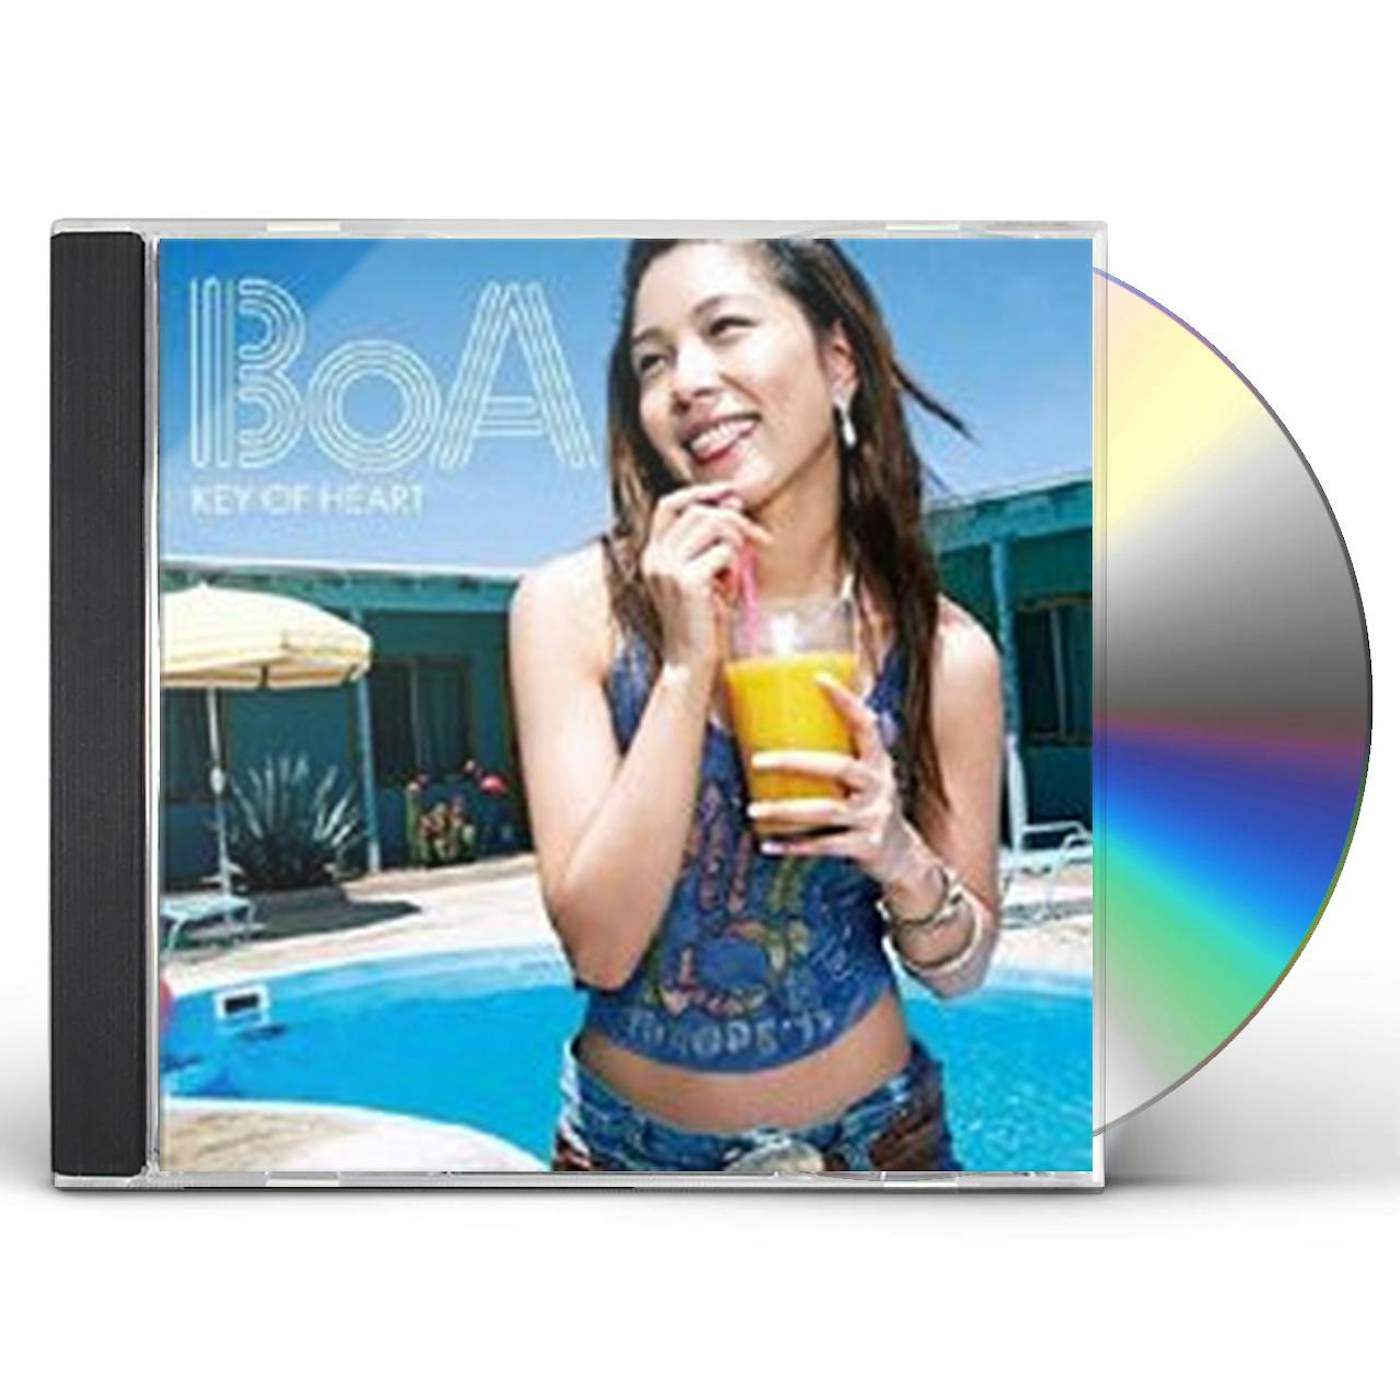 BoA KEY OF HEART CD